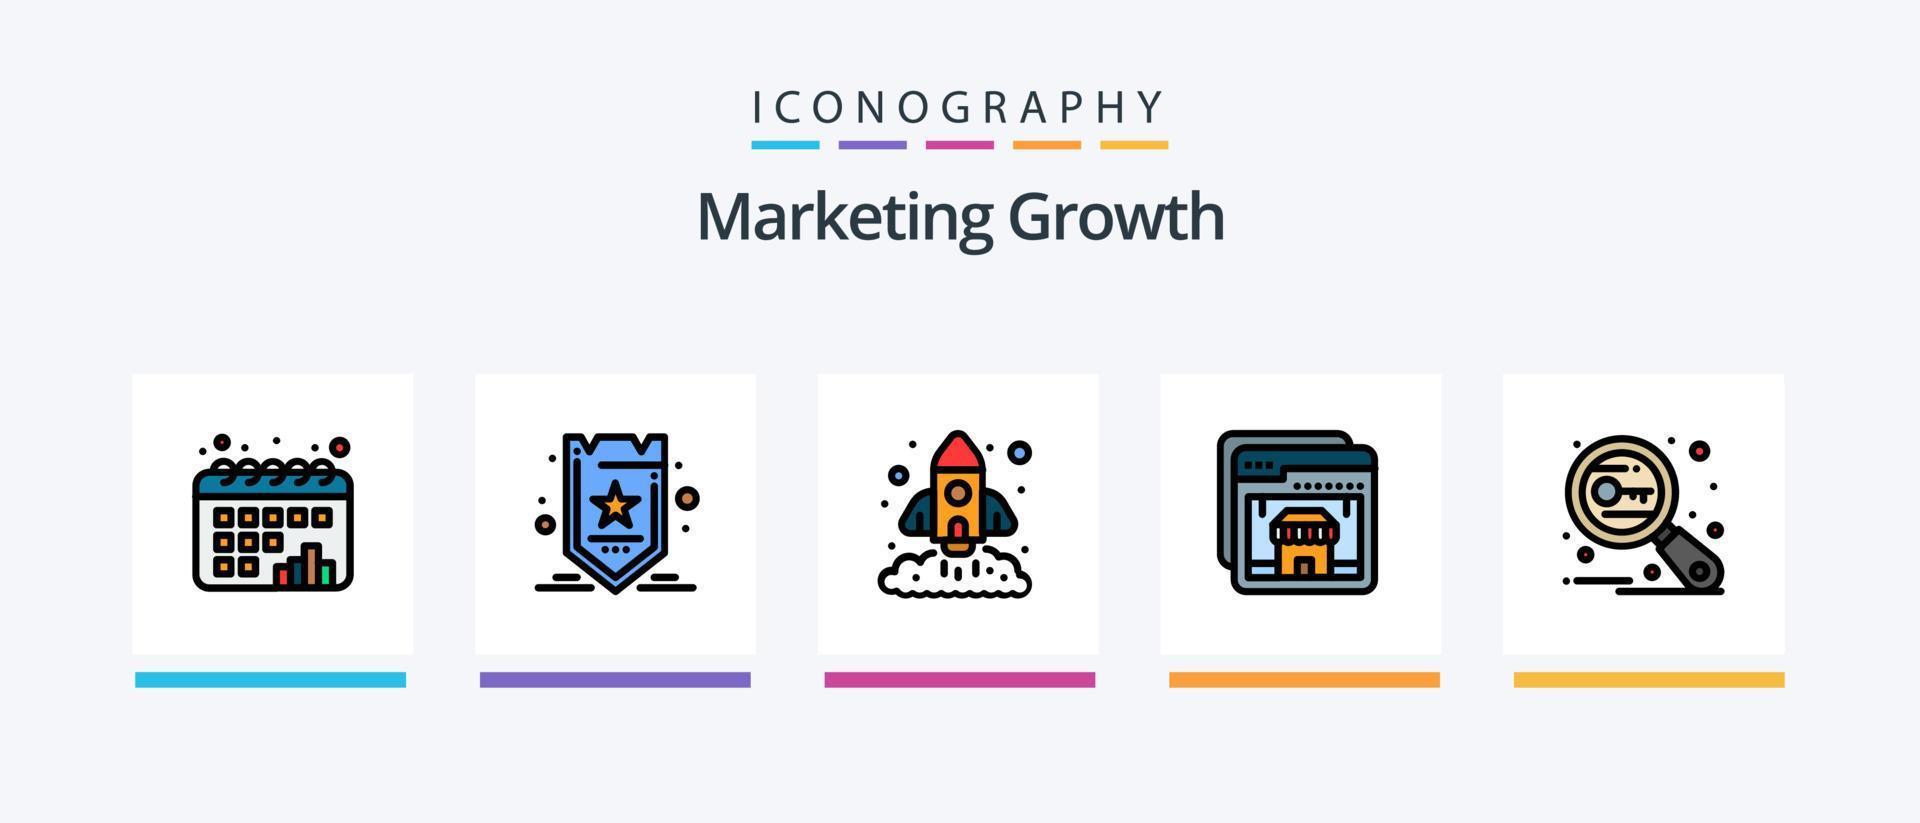 la línea de crecimiento de marketing llenó el paquete de 5 iconos, incluido el éxito. marketing. arriba. crecimiento. envío. diseño de iconos creativos vector